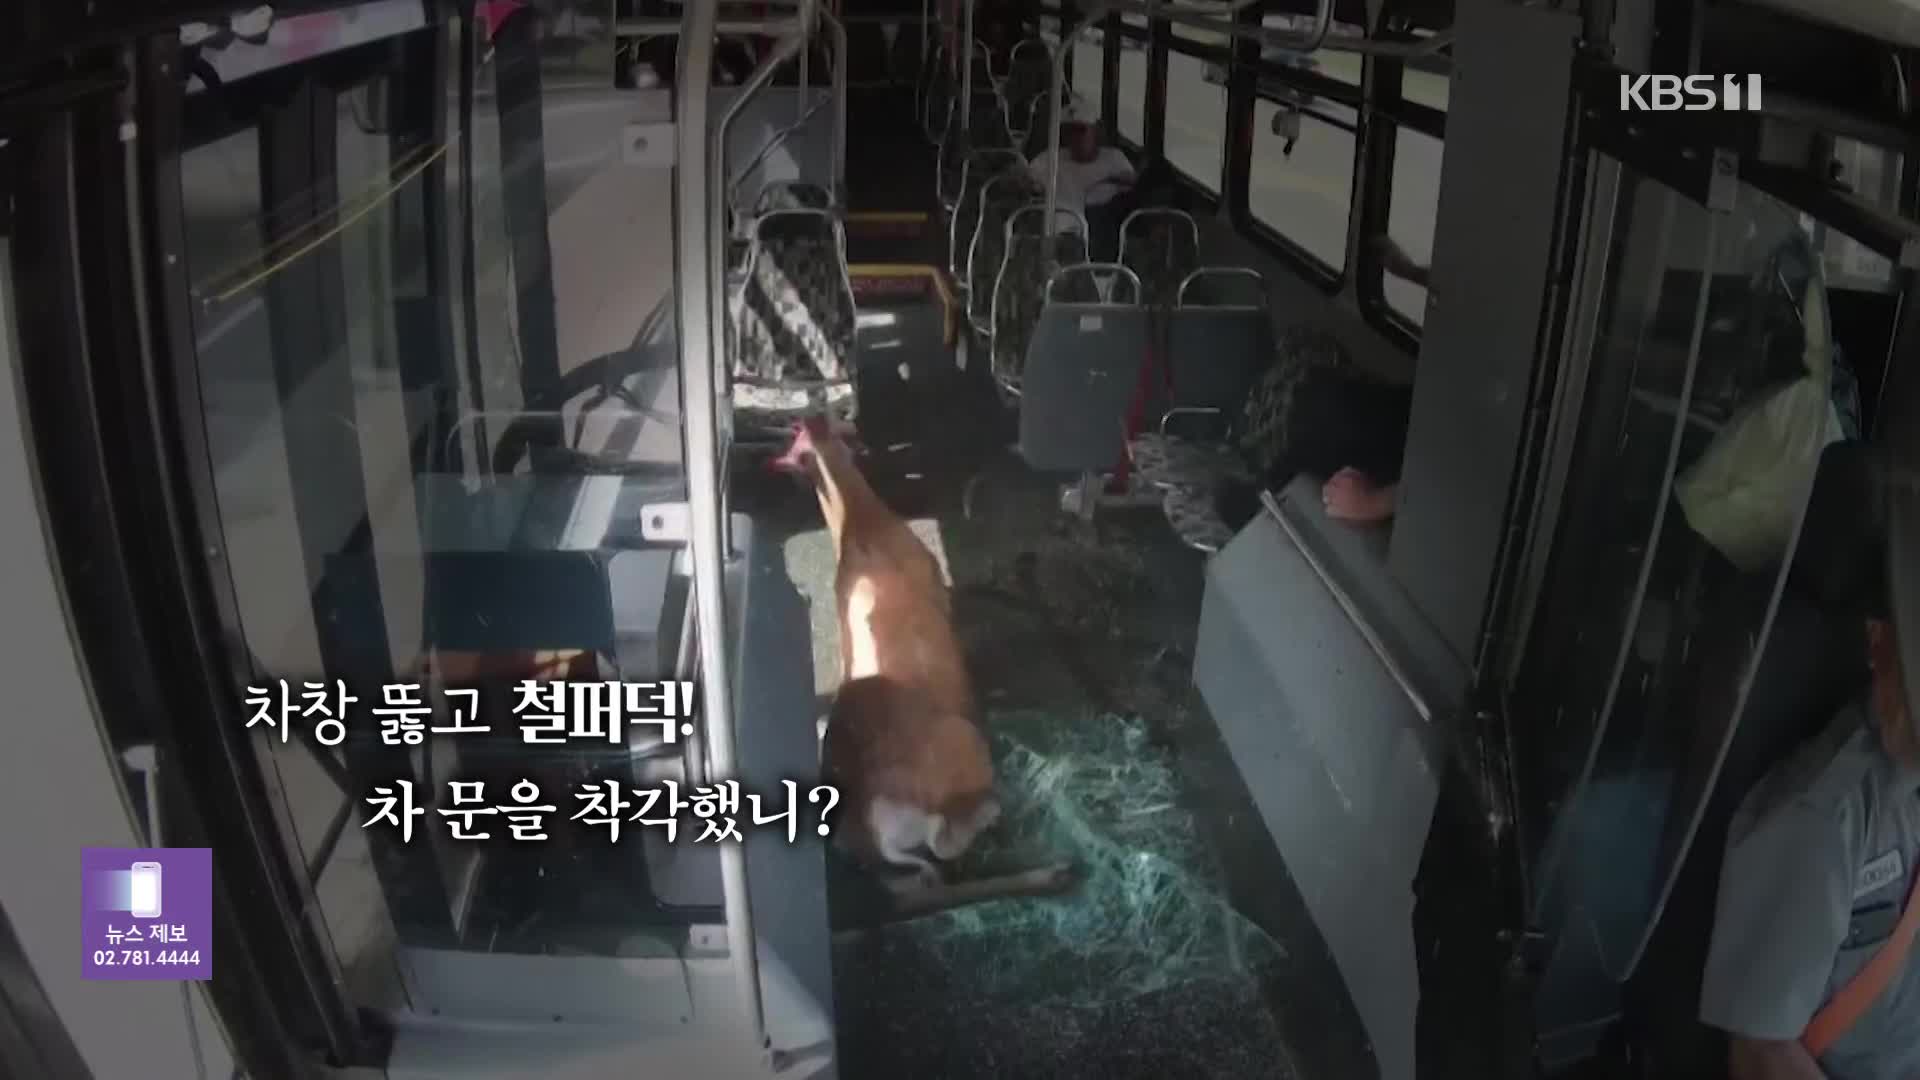 [오늘의 영상] “저도 태워주세요!” 버스로 몸통박치기한 사슴, 승객 혼비백산